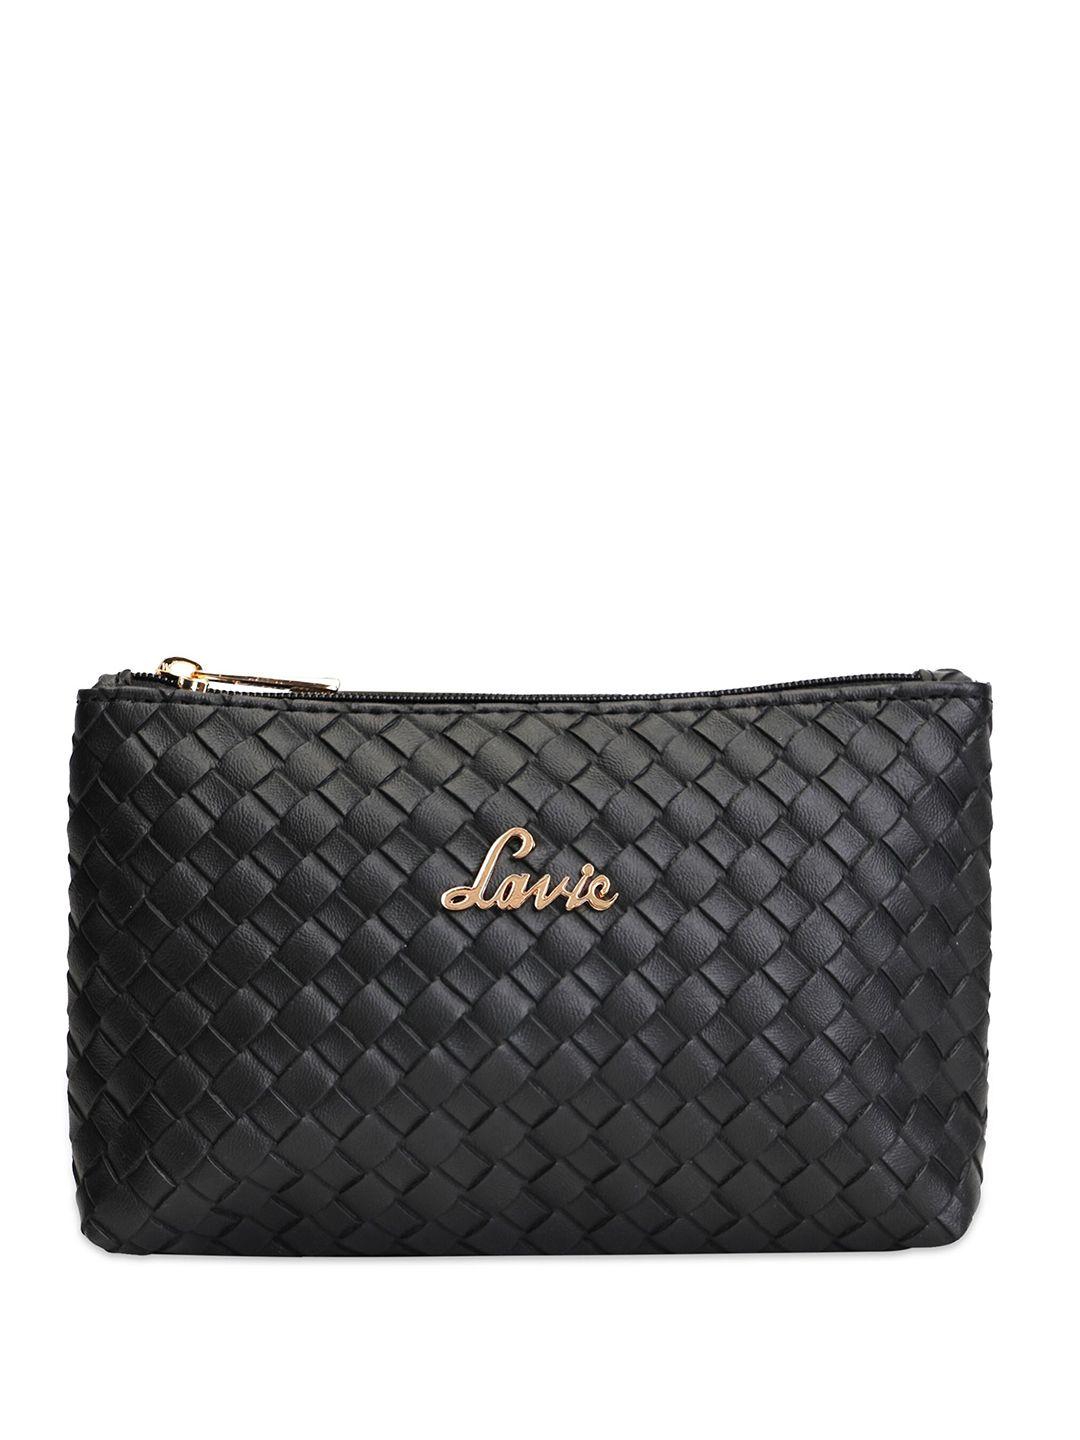 lavie women textured purse clutch